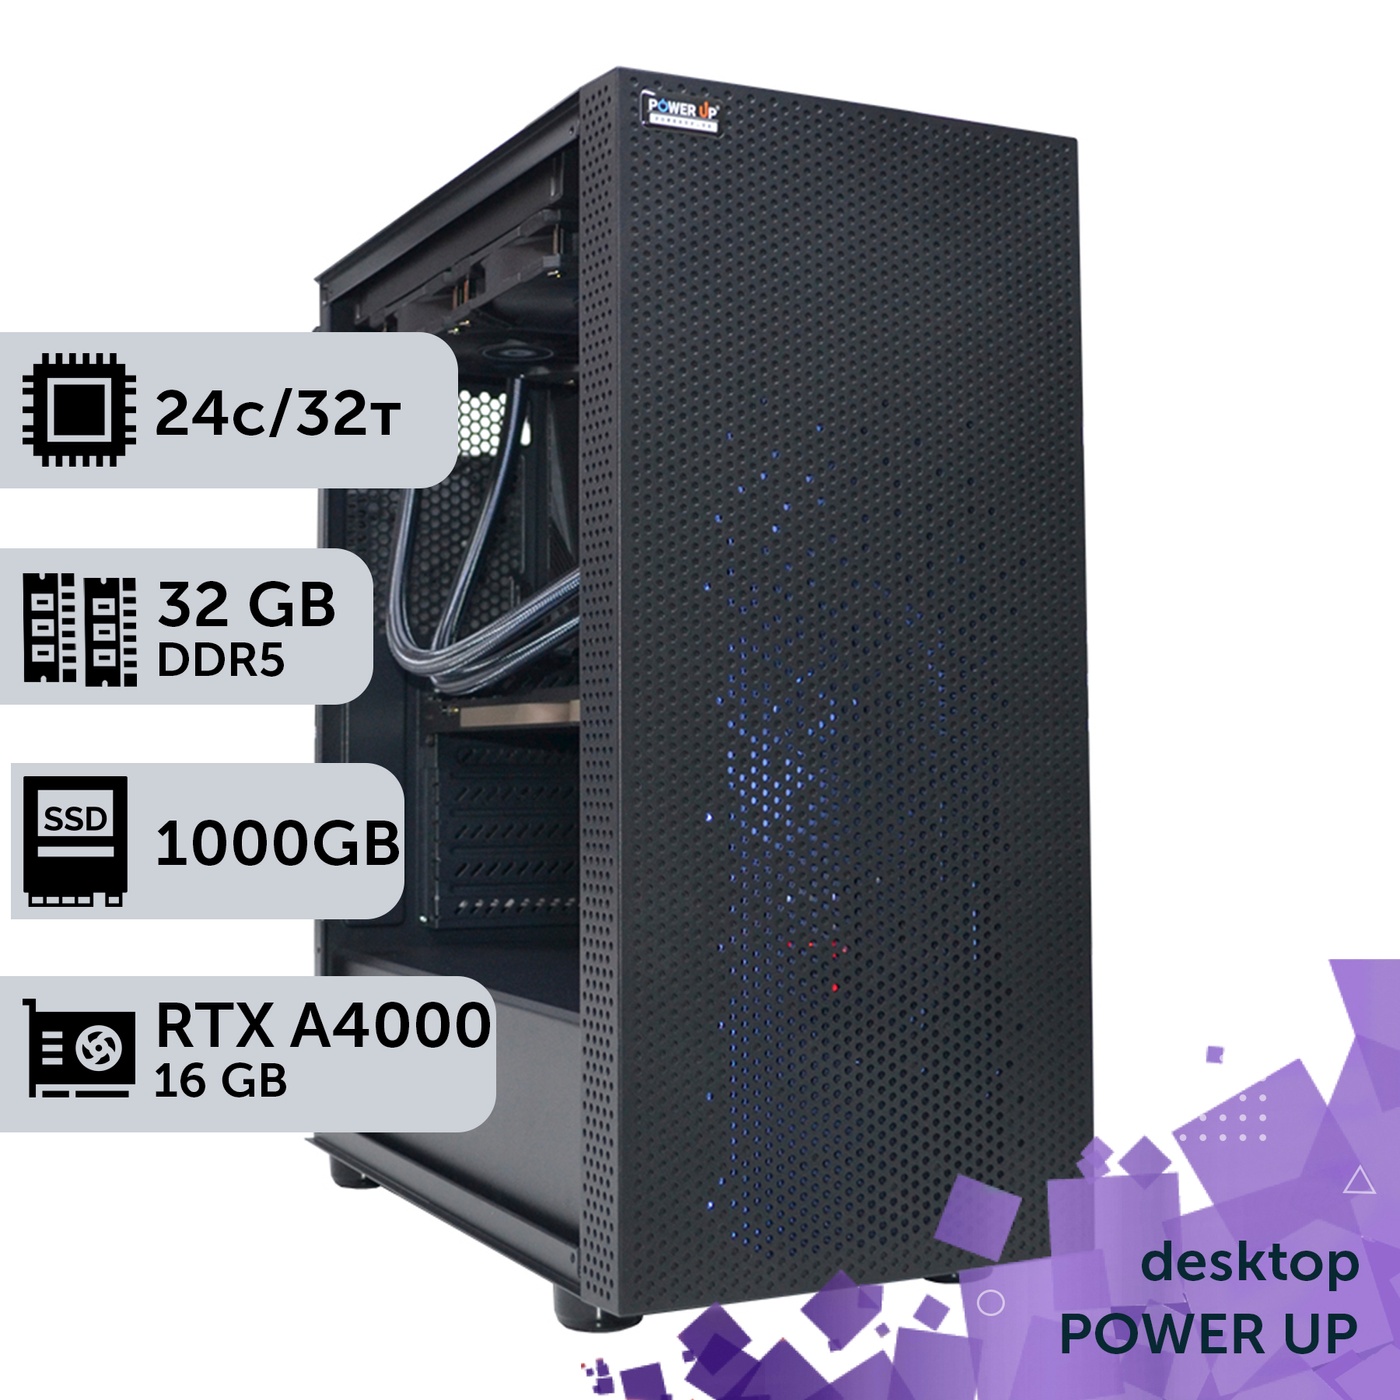 Рабочая станция PowerUp Desktop #293 Core i9 14900K/32 GB/SSD 1TB/NVIDIA Quadro RTX A4000 16GB